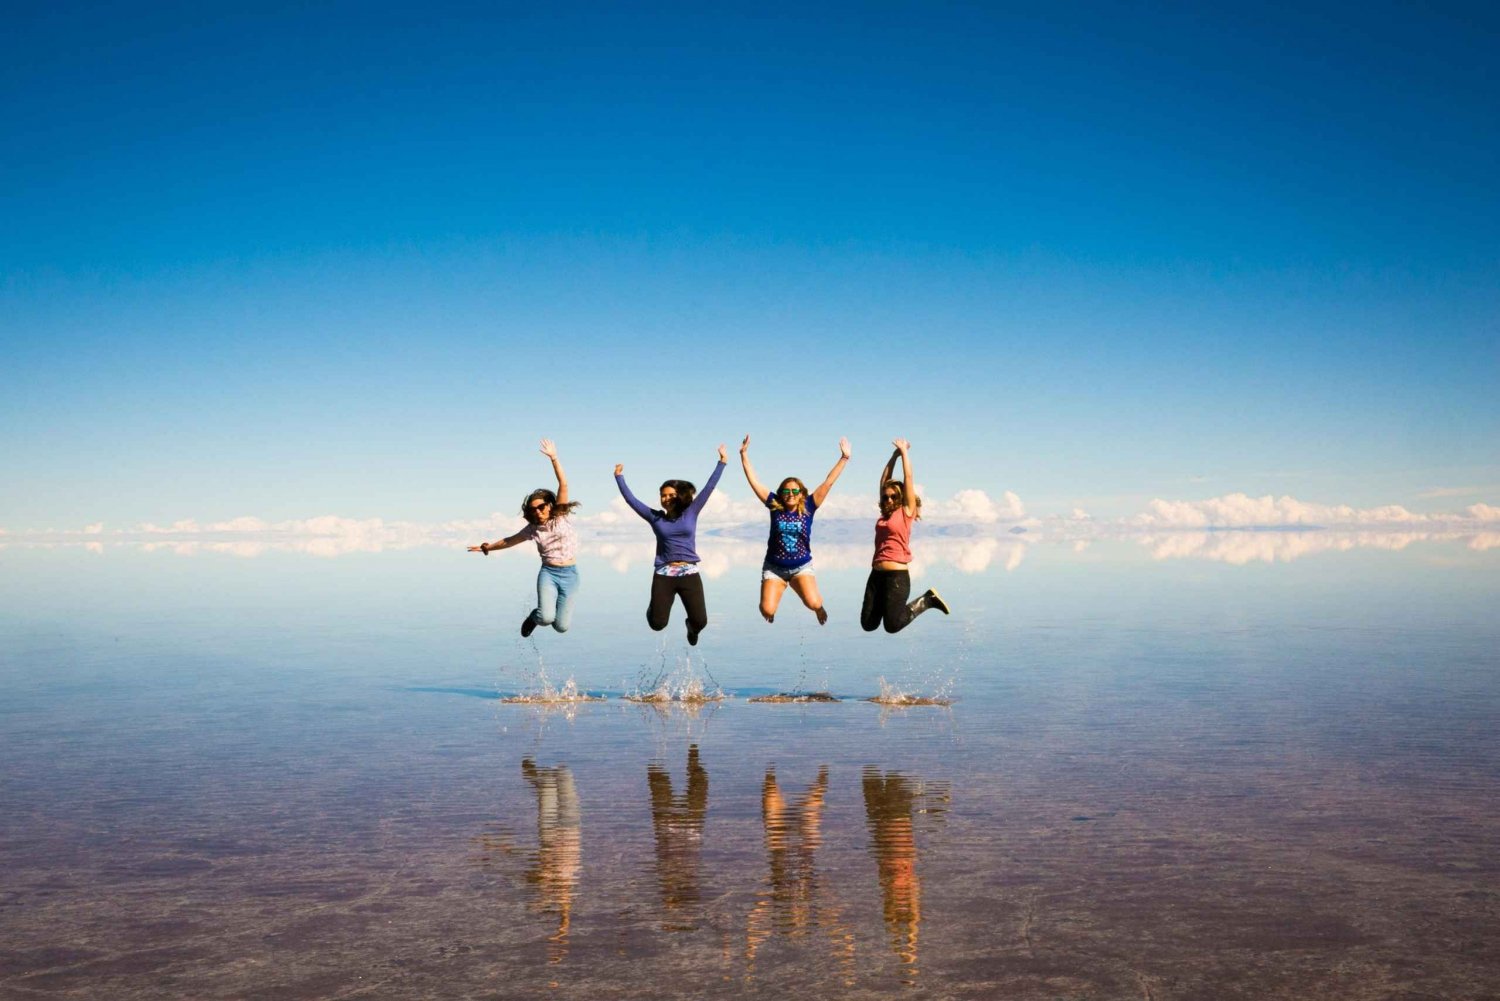 From San Pedro de Atacama | Uyuni Salt Flat 3 days in Group